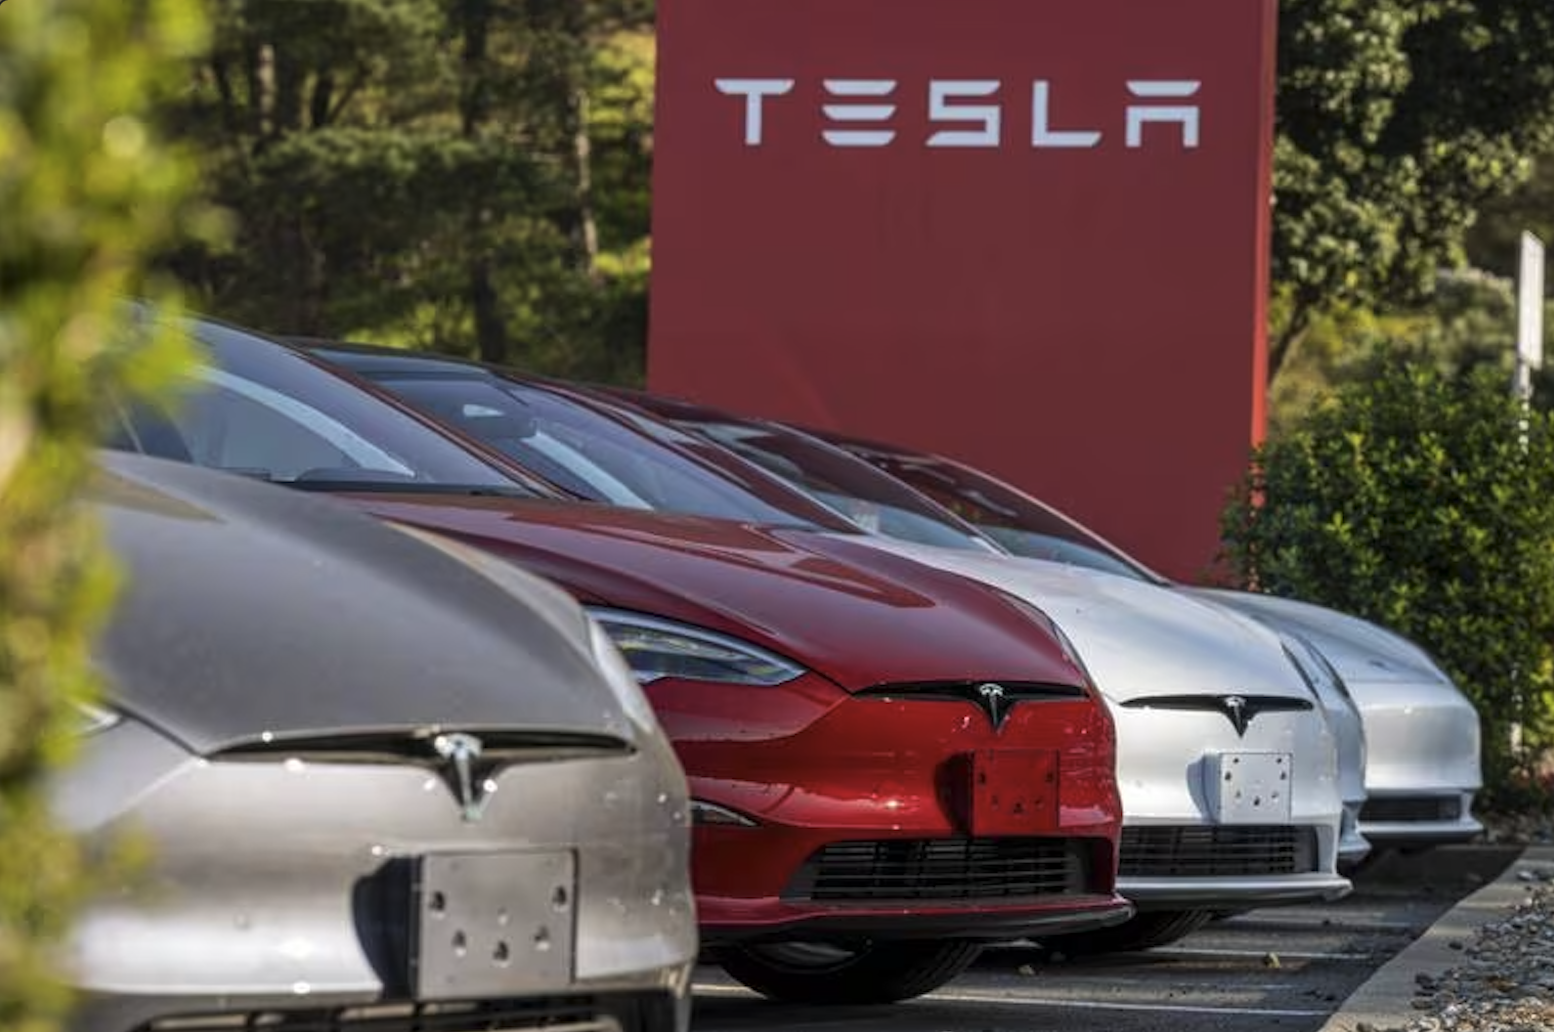 NL dará a Tesla incentivos por 2627 millones de pesos